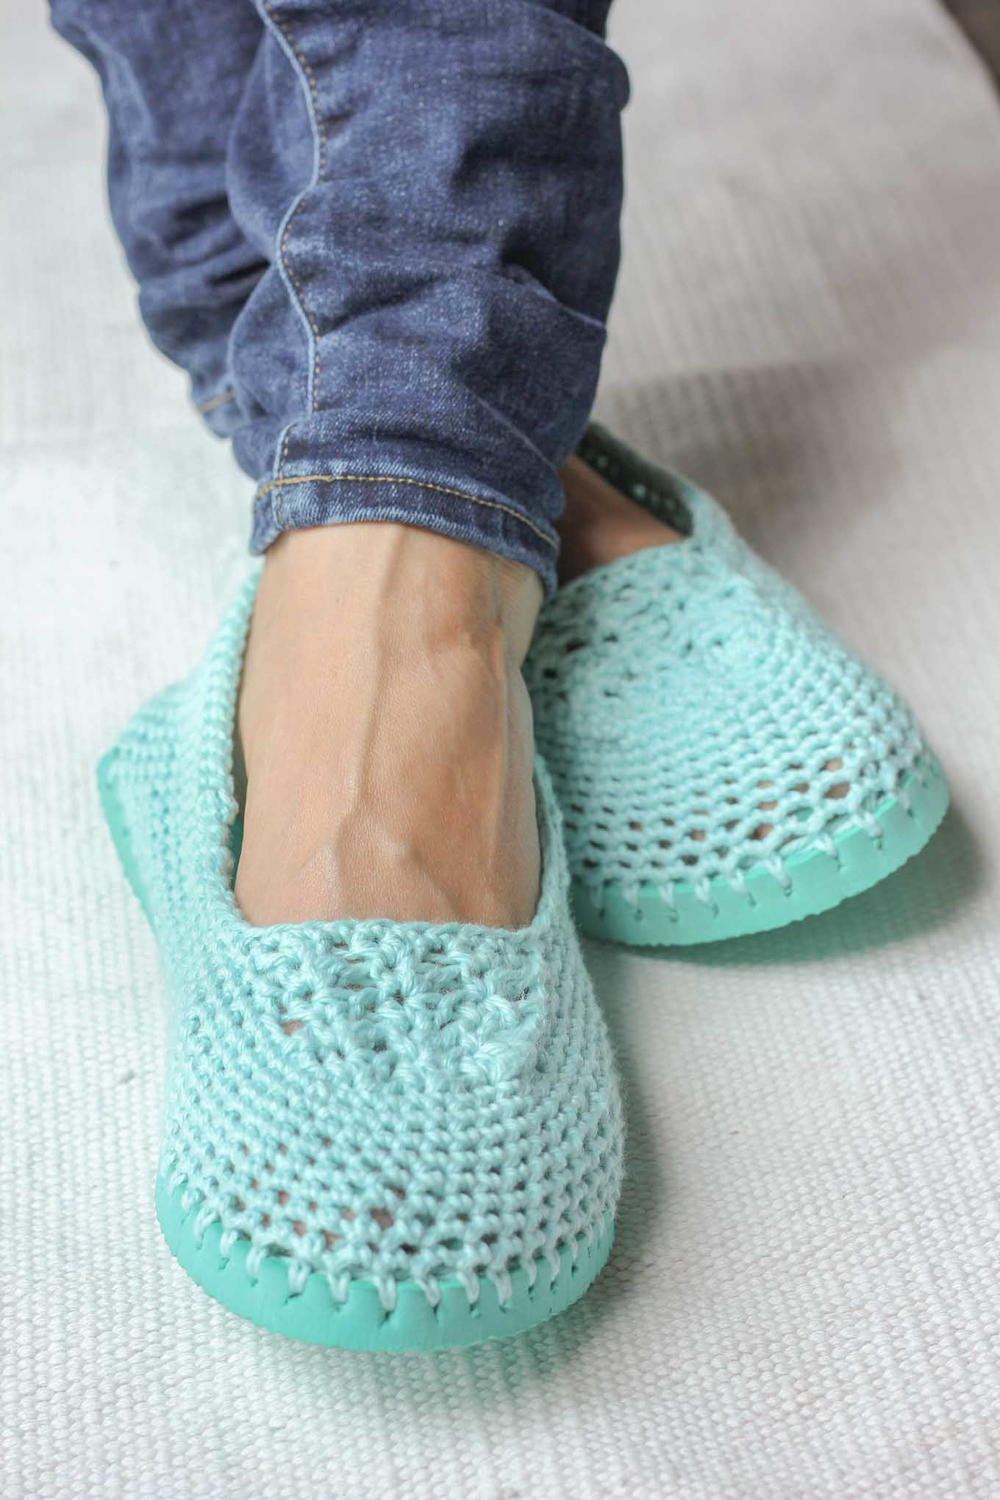 crochet boots from flip flops